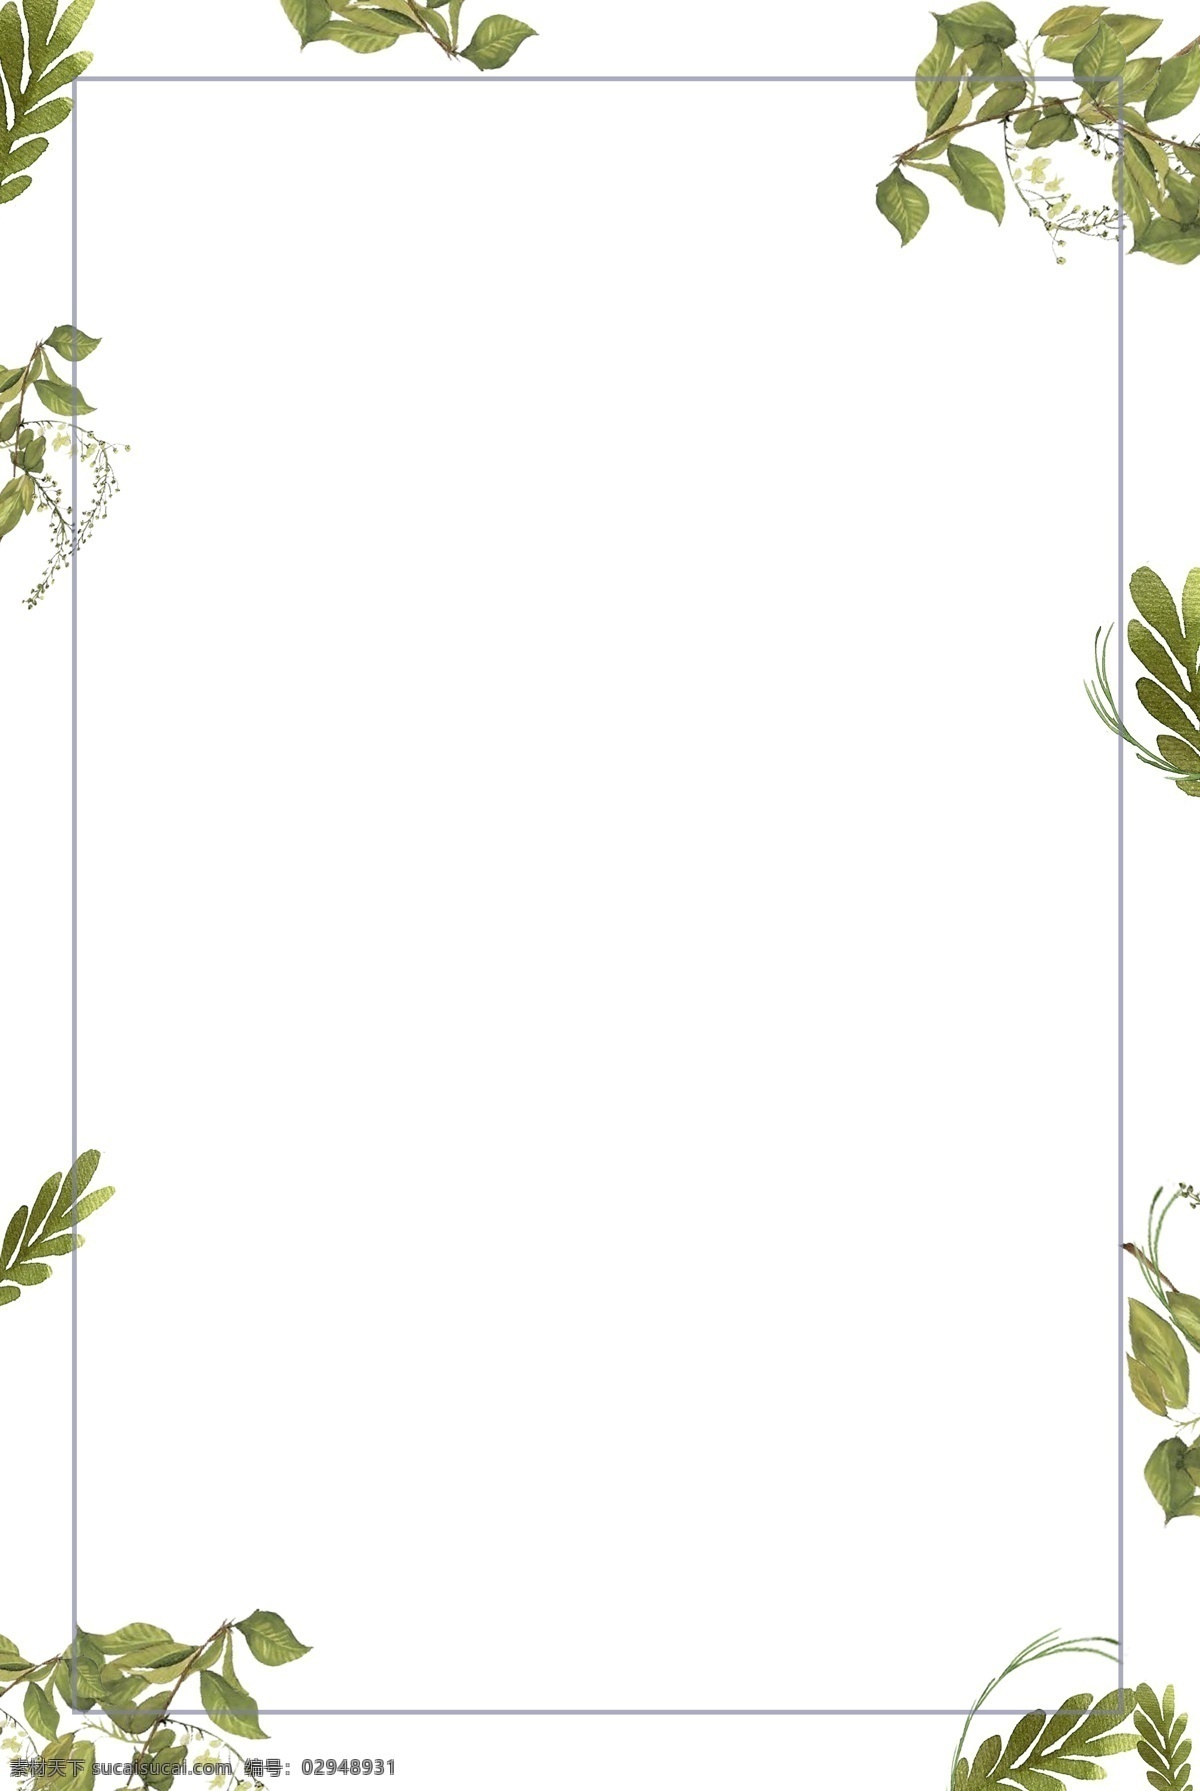 手绘 植物 简约 边框 手绘边框 绿色植物边框 简约边框 淡雅边框 低调型边框 清雅型边框 可用于学习 海报制作 装饰等